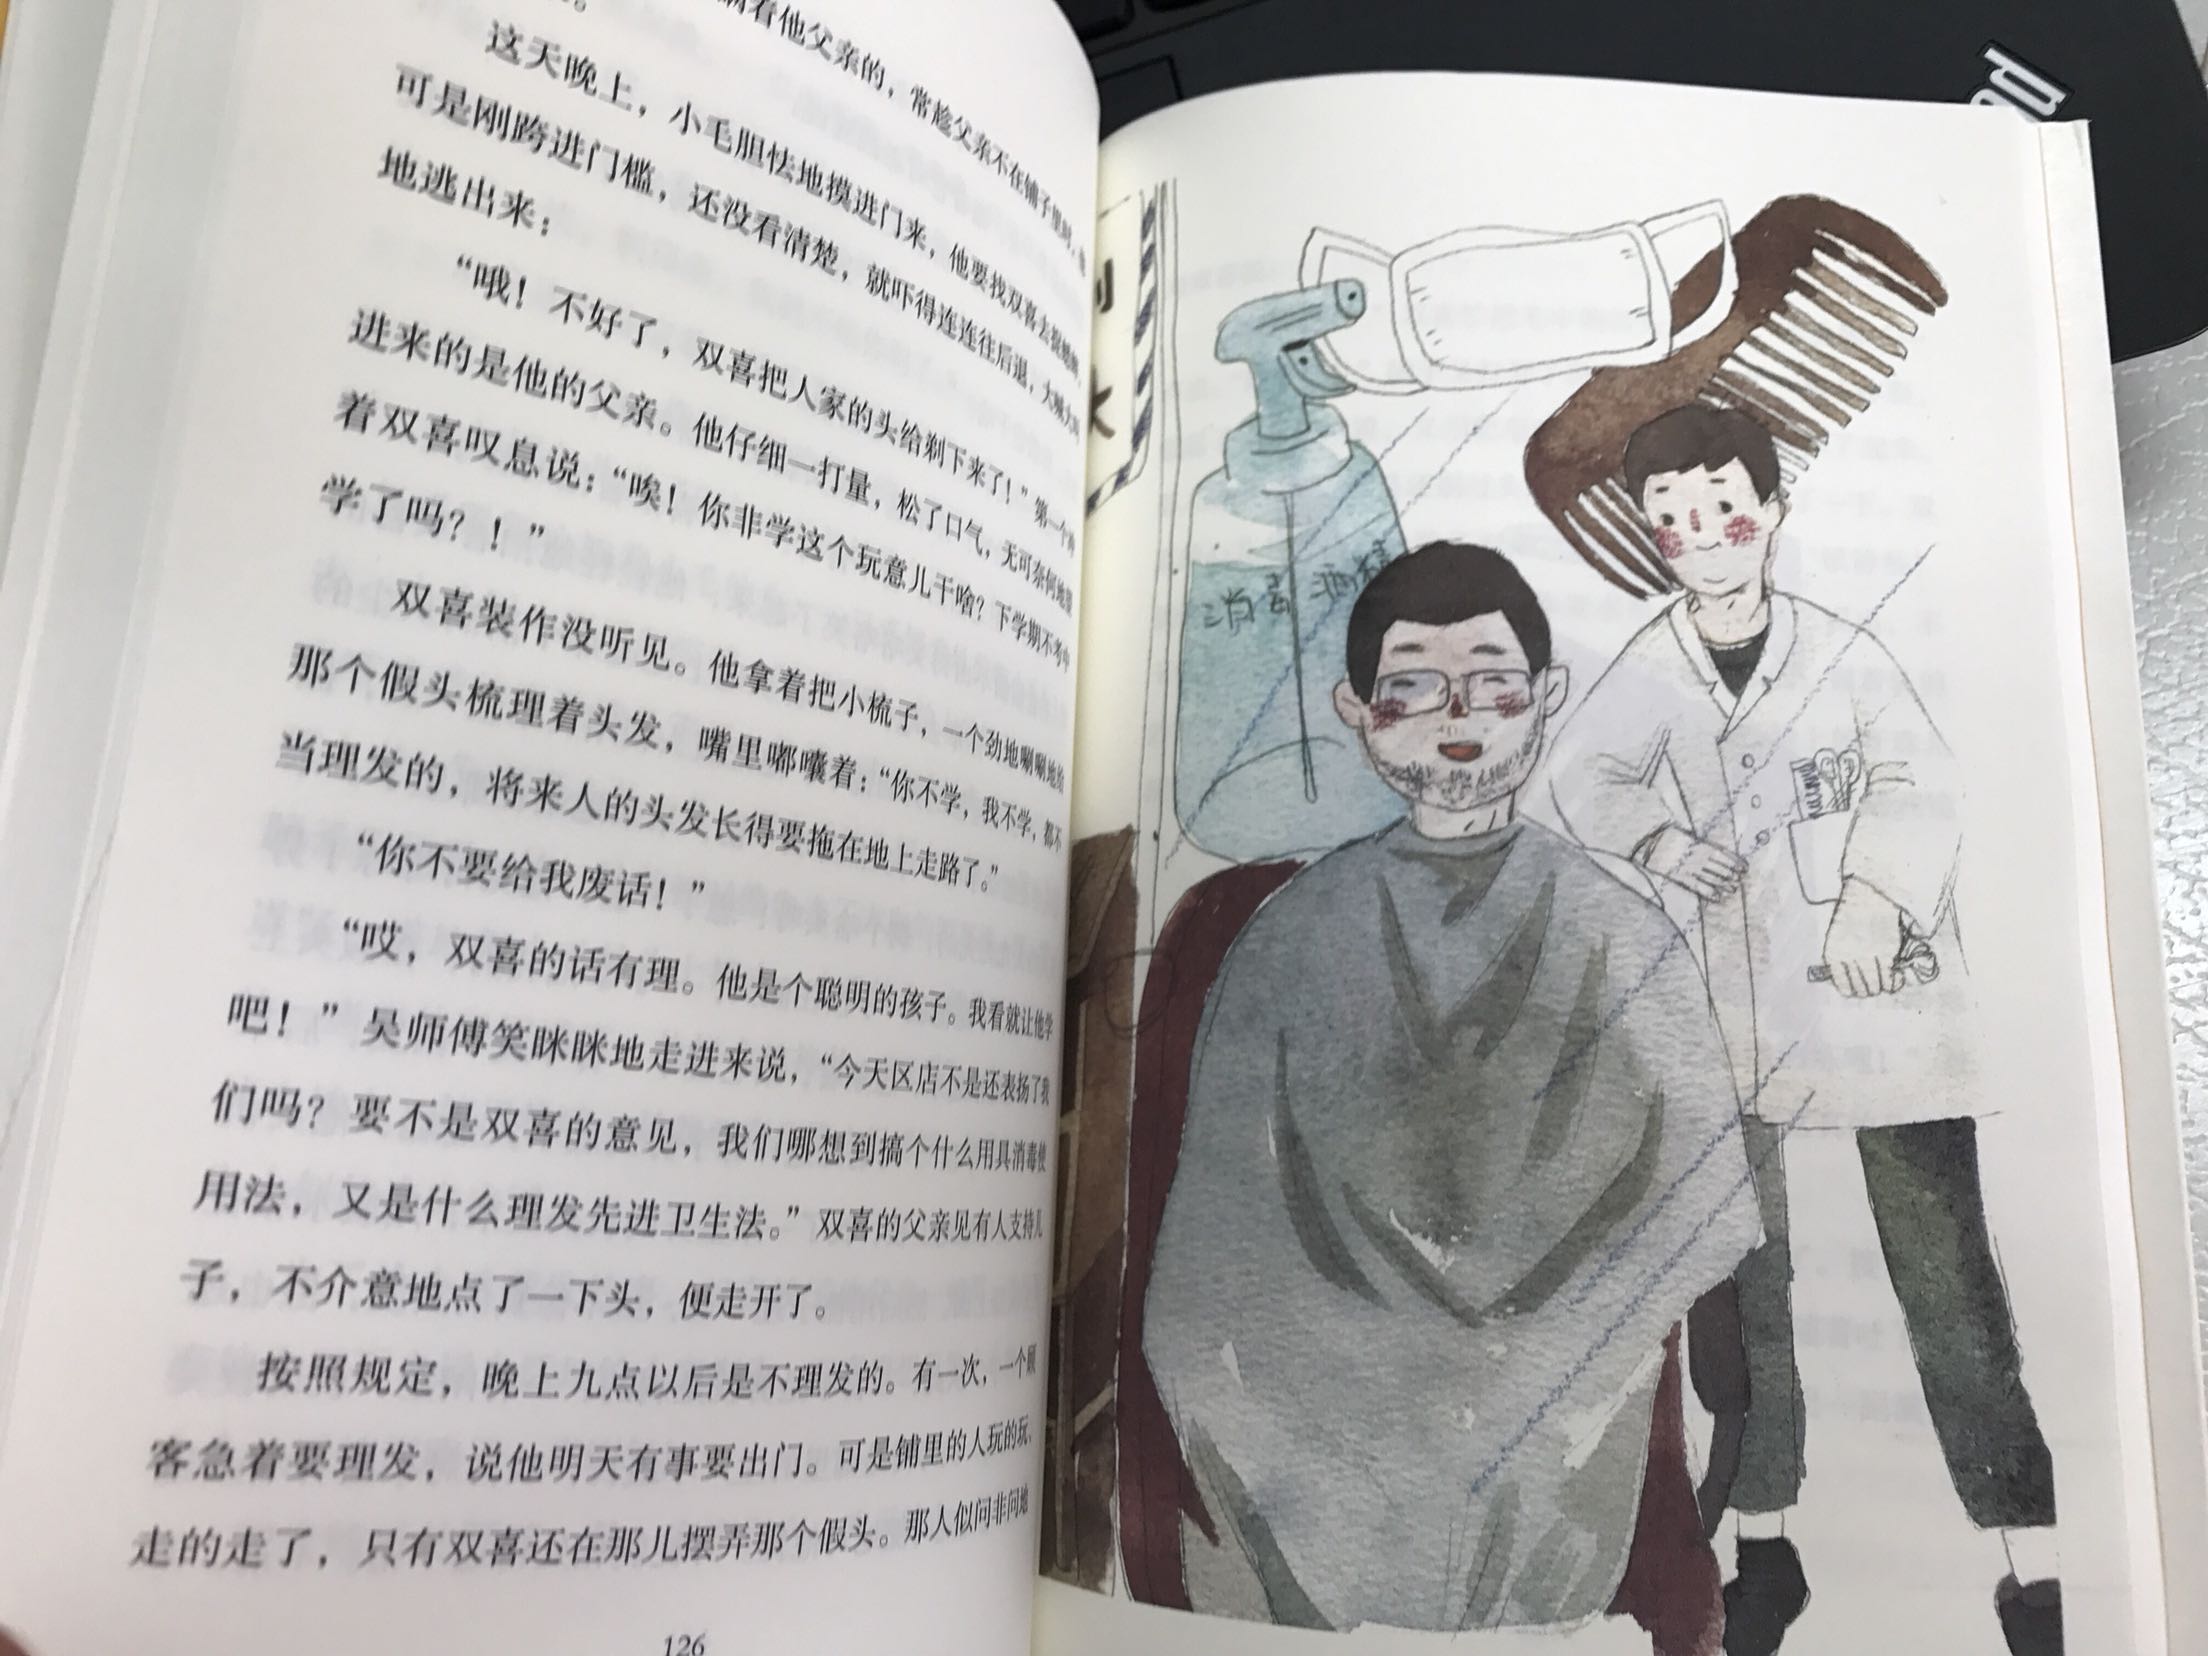 颜值很高的书，质量很好，挺有质感的，是北京市教委推荐的，都是名家作品，孩子很喜欢看，小说故事很感人